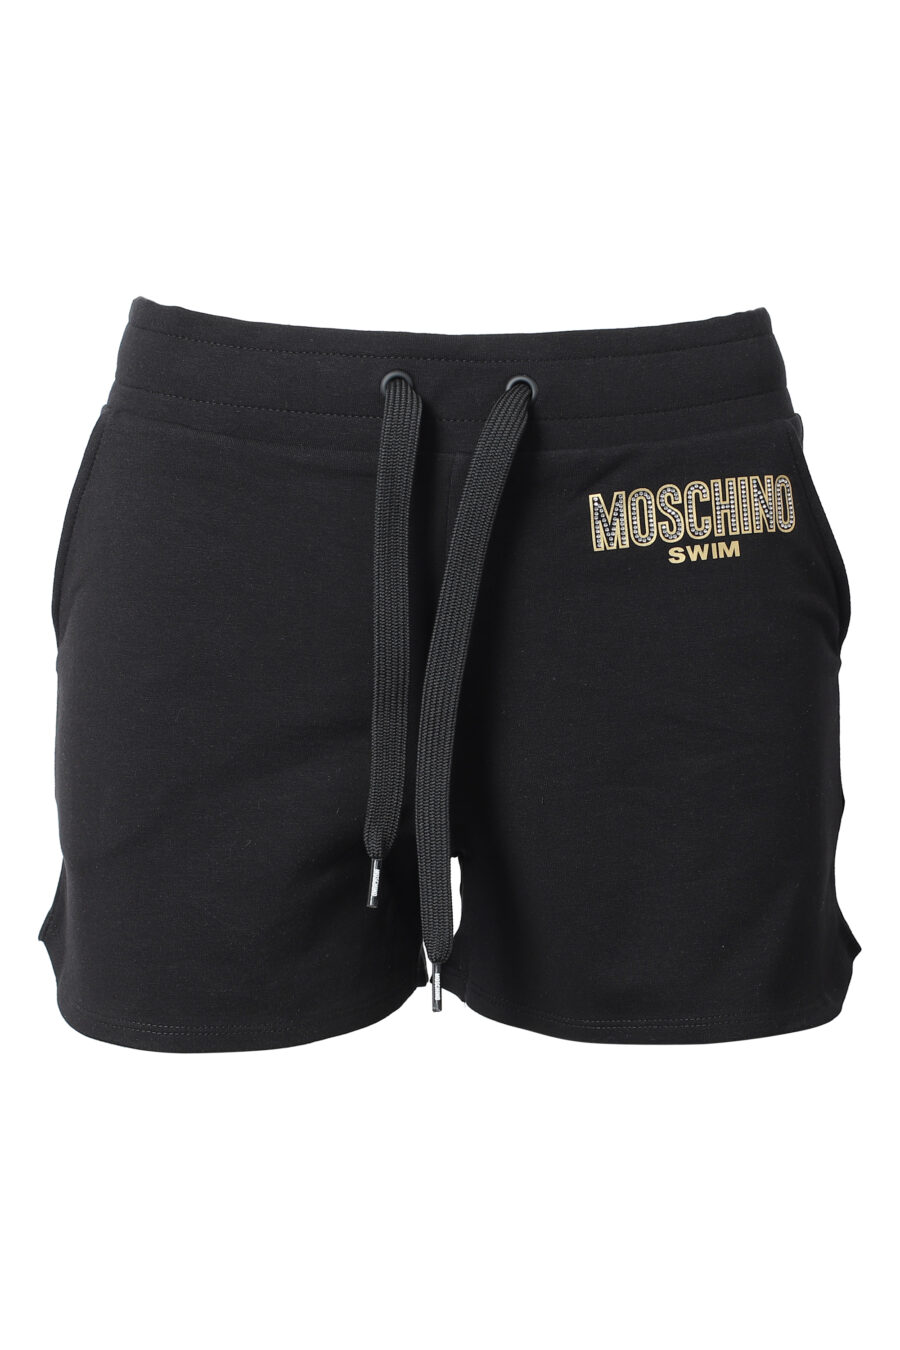 Schwarze Shorts mit strassbesetztem Logo - IMG 9844